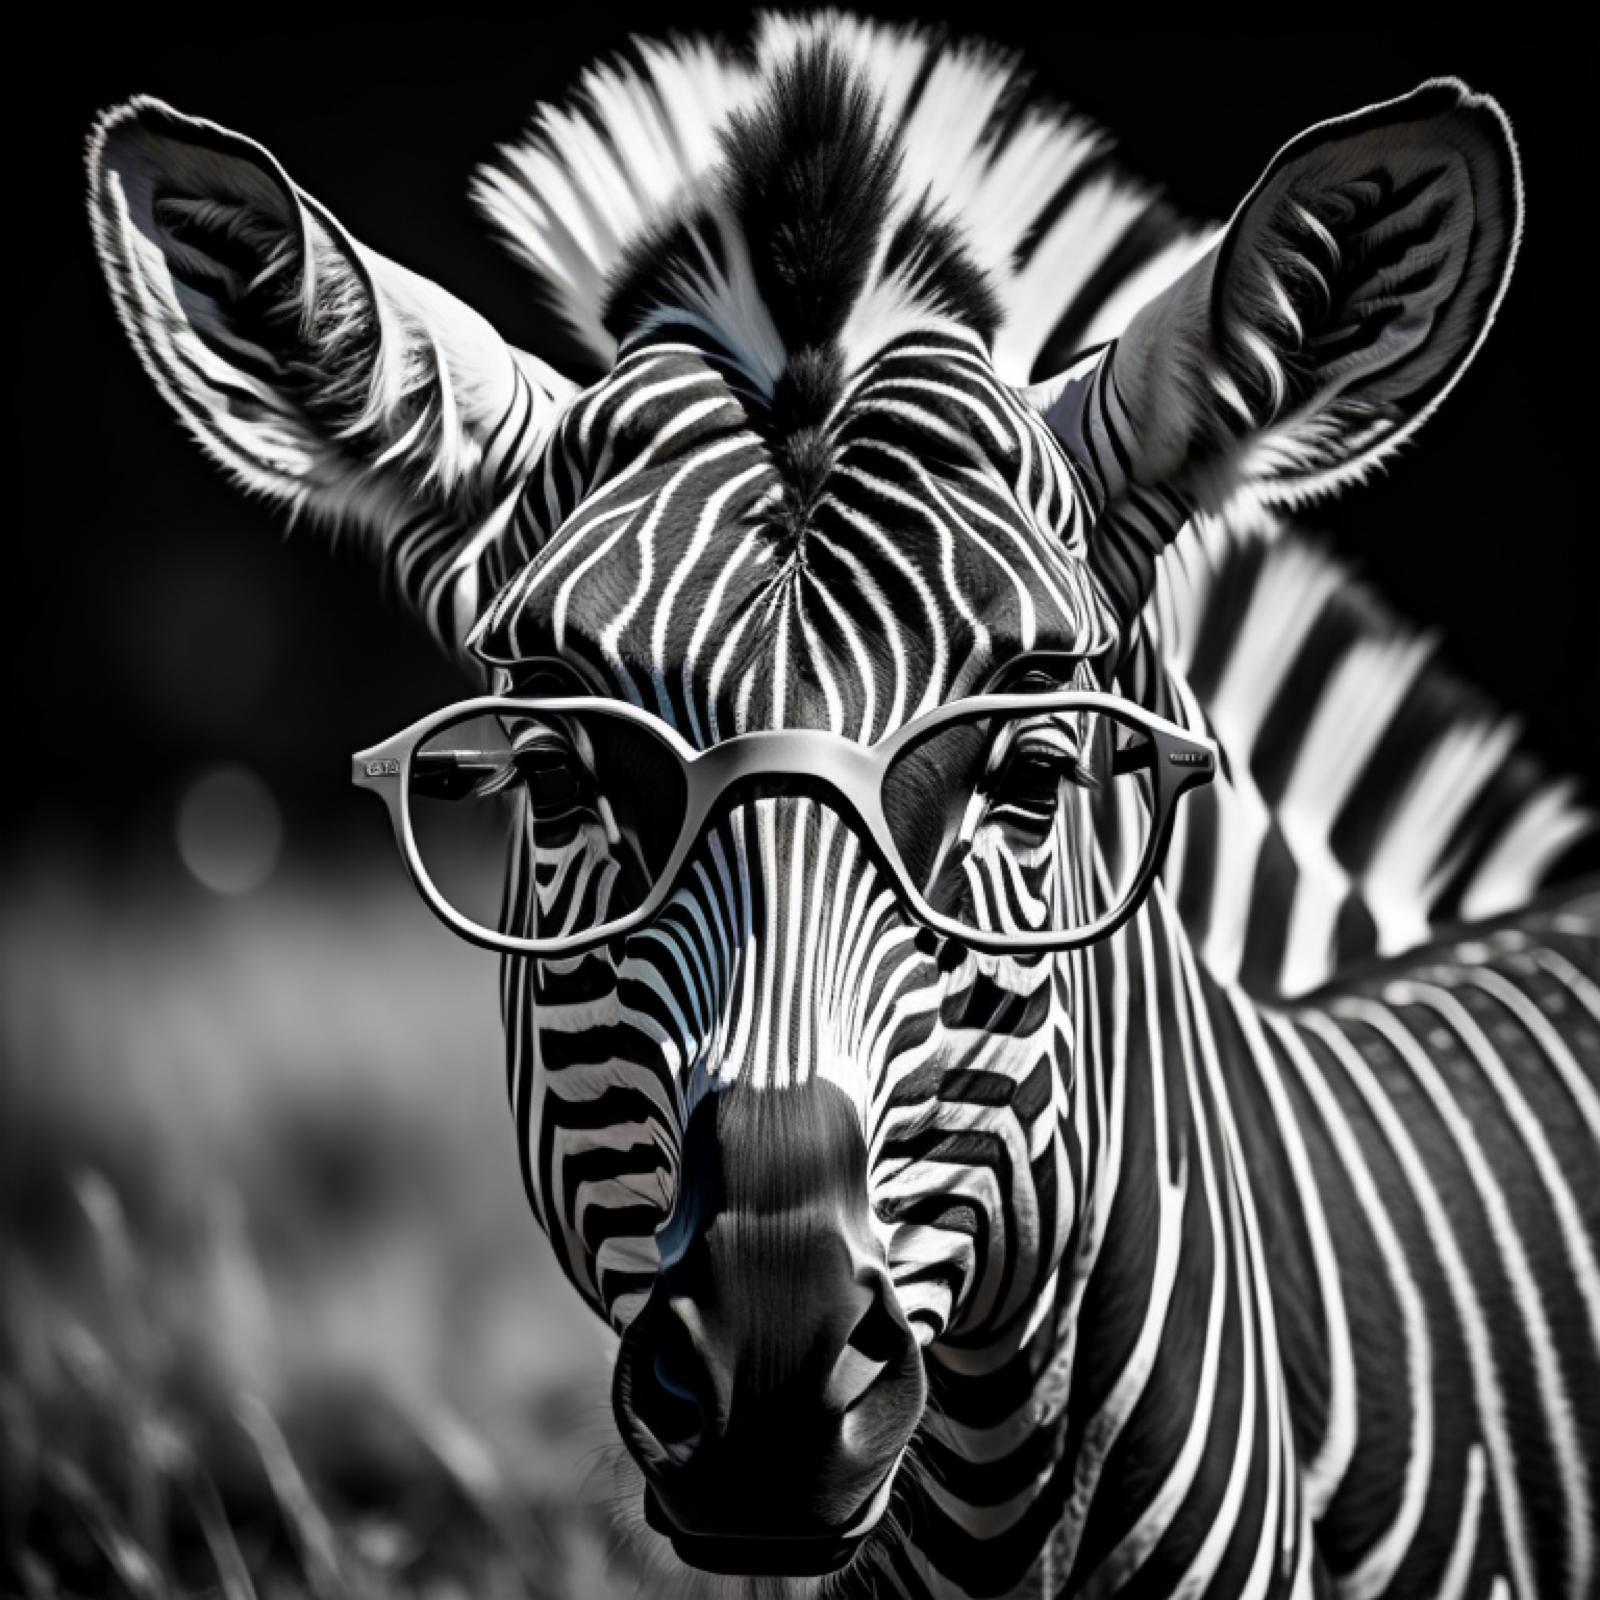 Der Rassismus der Zebras